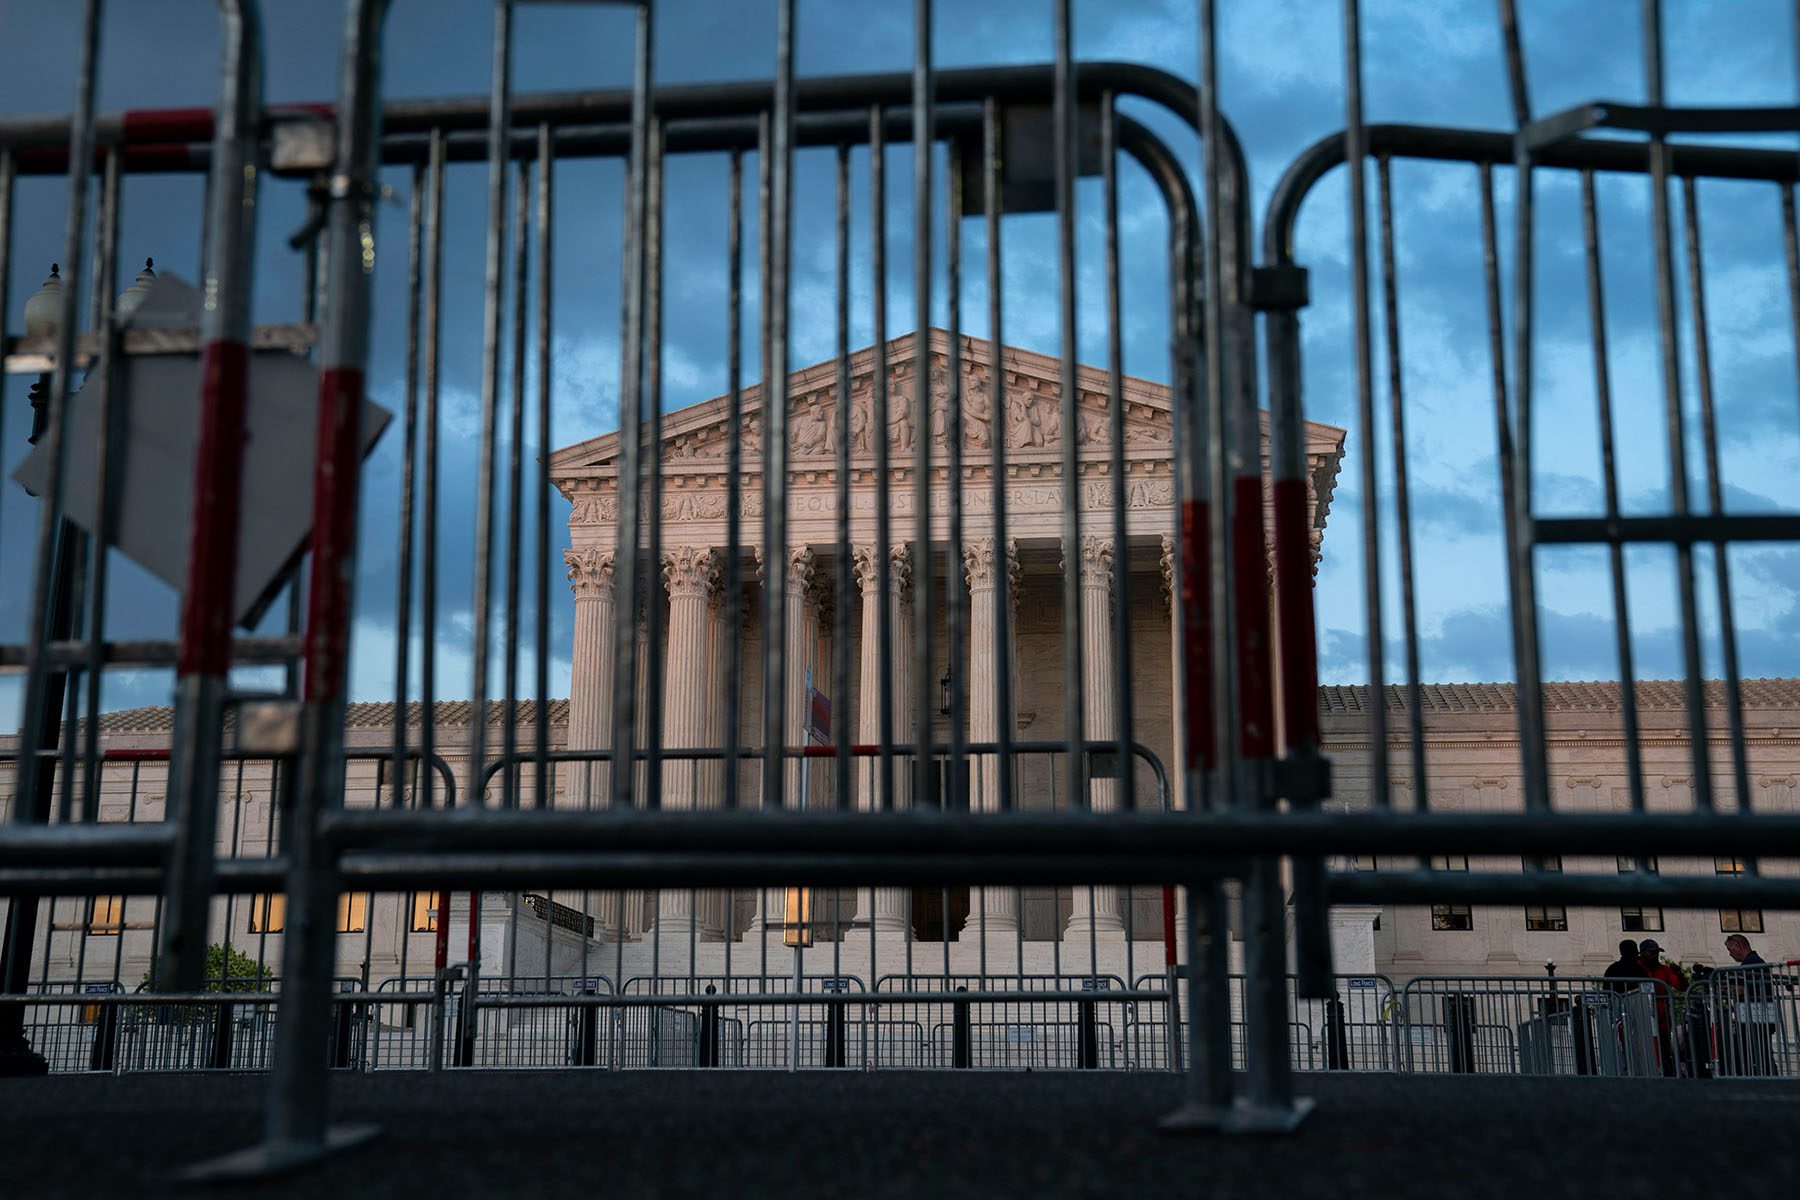 Fences surround the Supreme Court building.